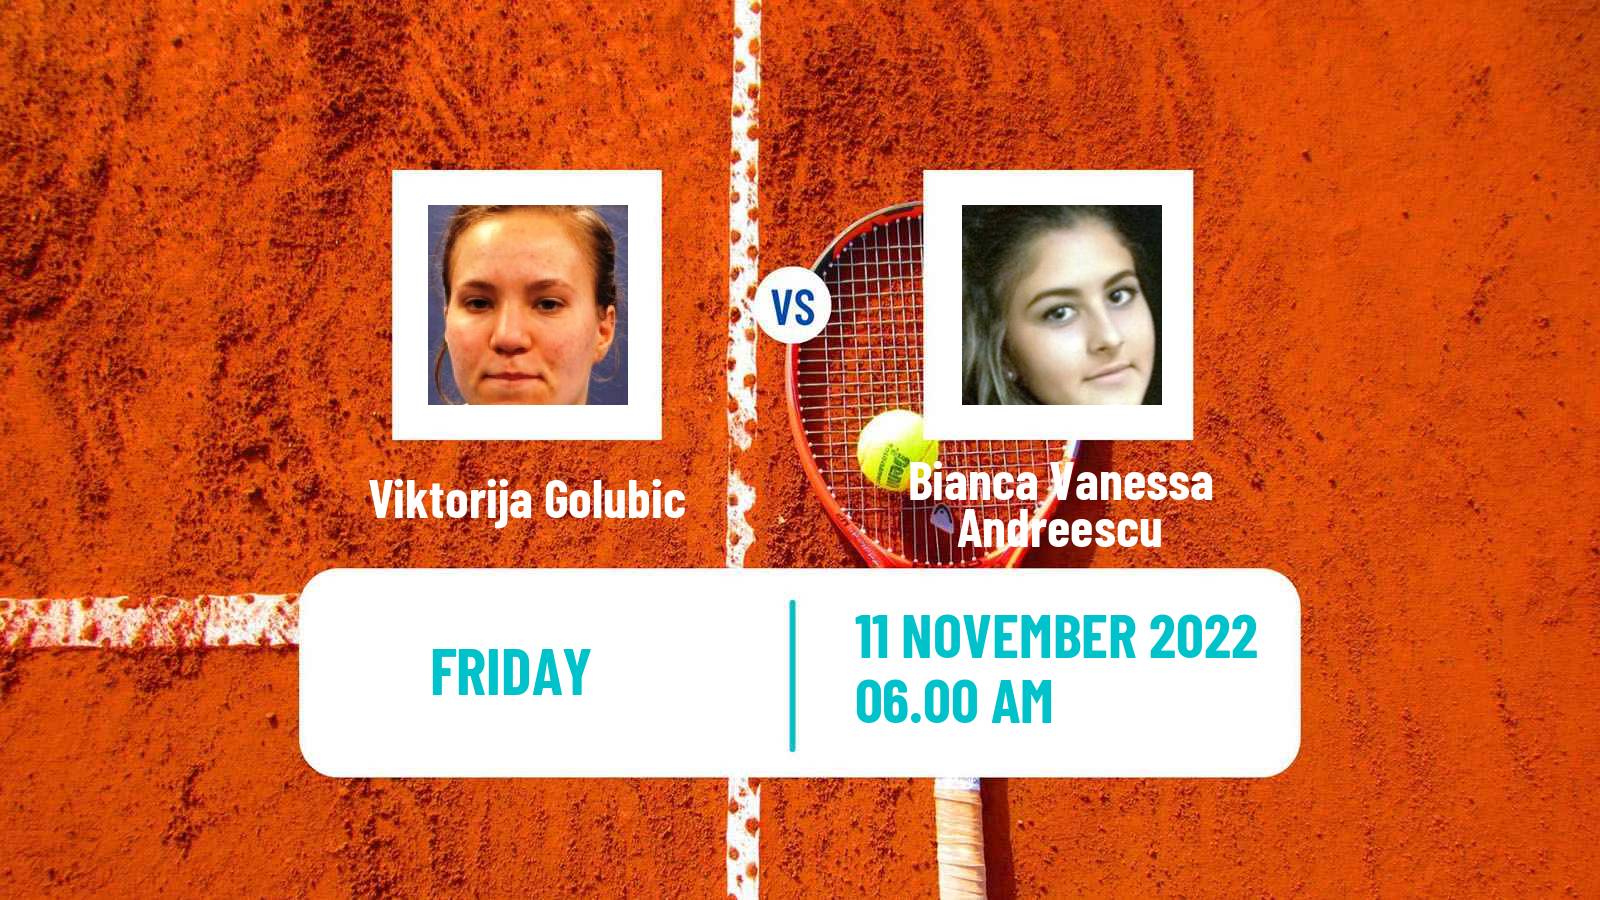 Tennis WTA Billie Jean King Cup World Group Viktorija Golubic - Bianca Vanessa Andreescu